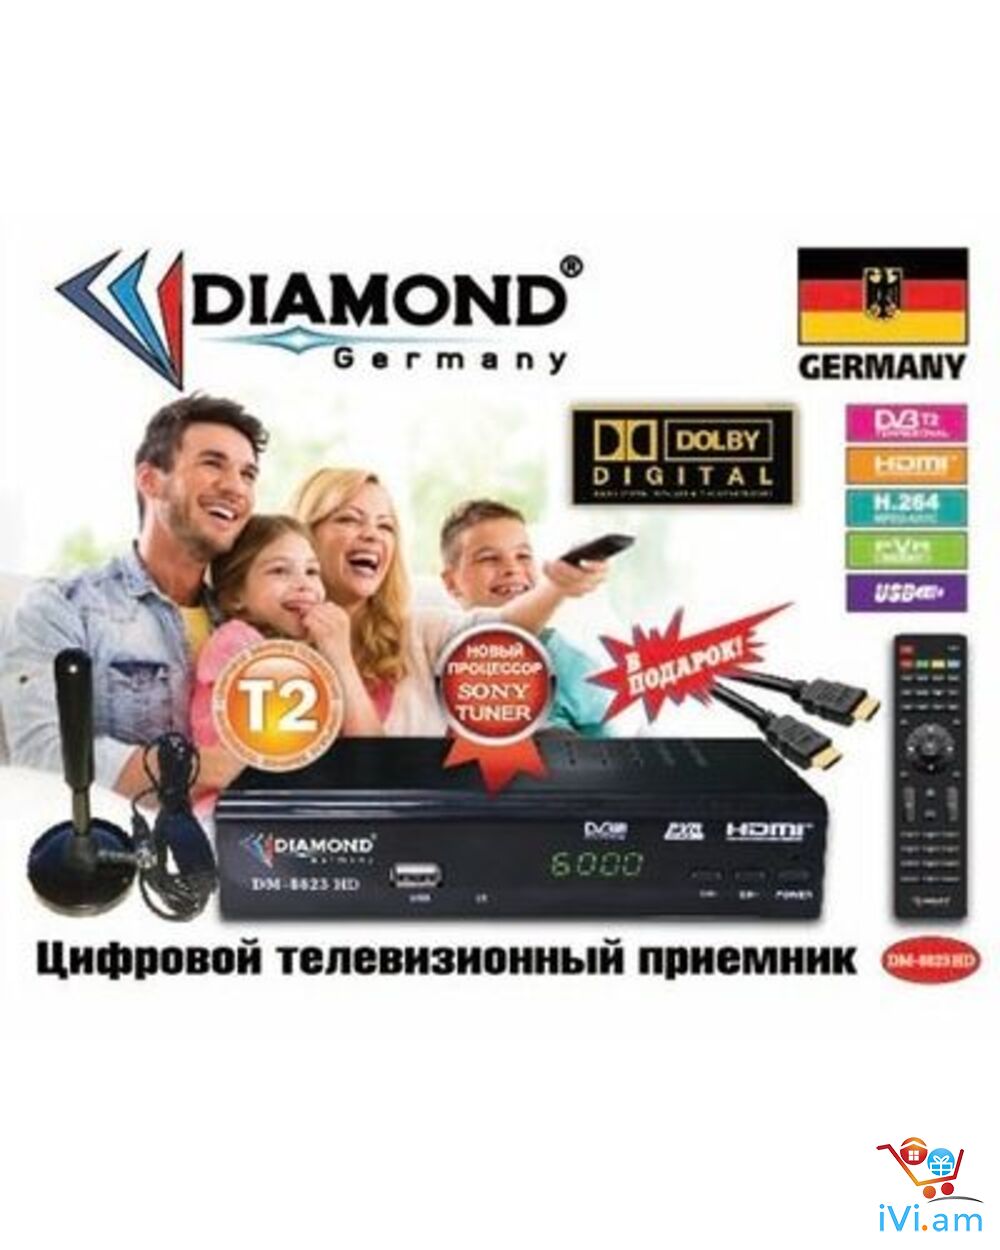 DVBT2 թվային ընդունիչ սարք DIAMOND DM-8823HD + անվճար առաքում և տեղադրում - Լուսանկար 1